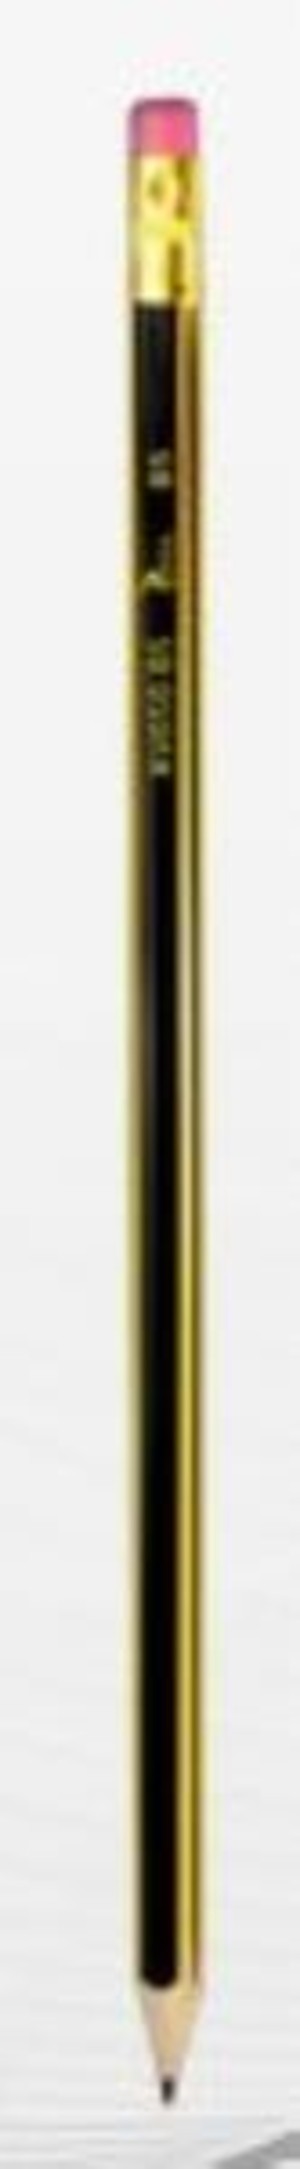 Ołówek techniczny z gumką H2 p12. TETIS, cena za 1szt.